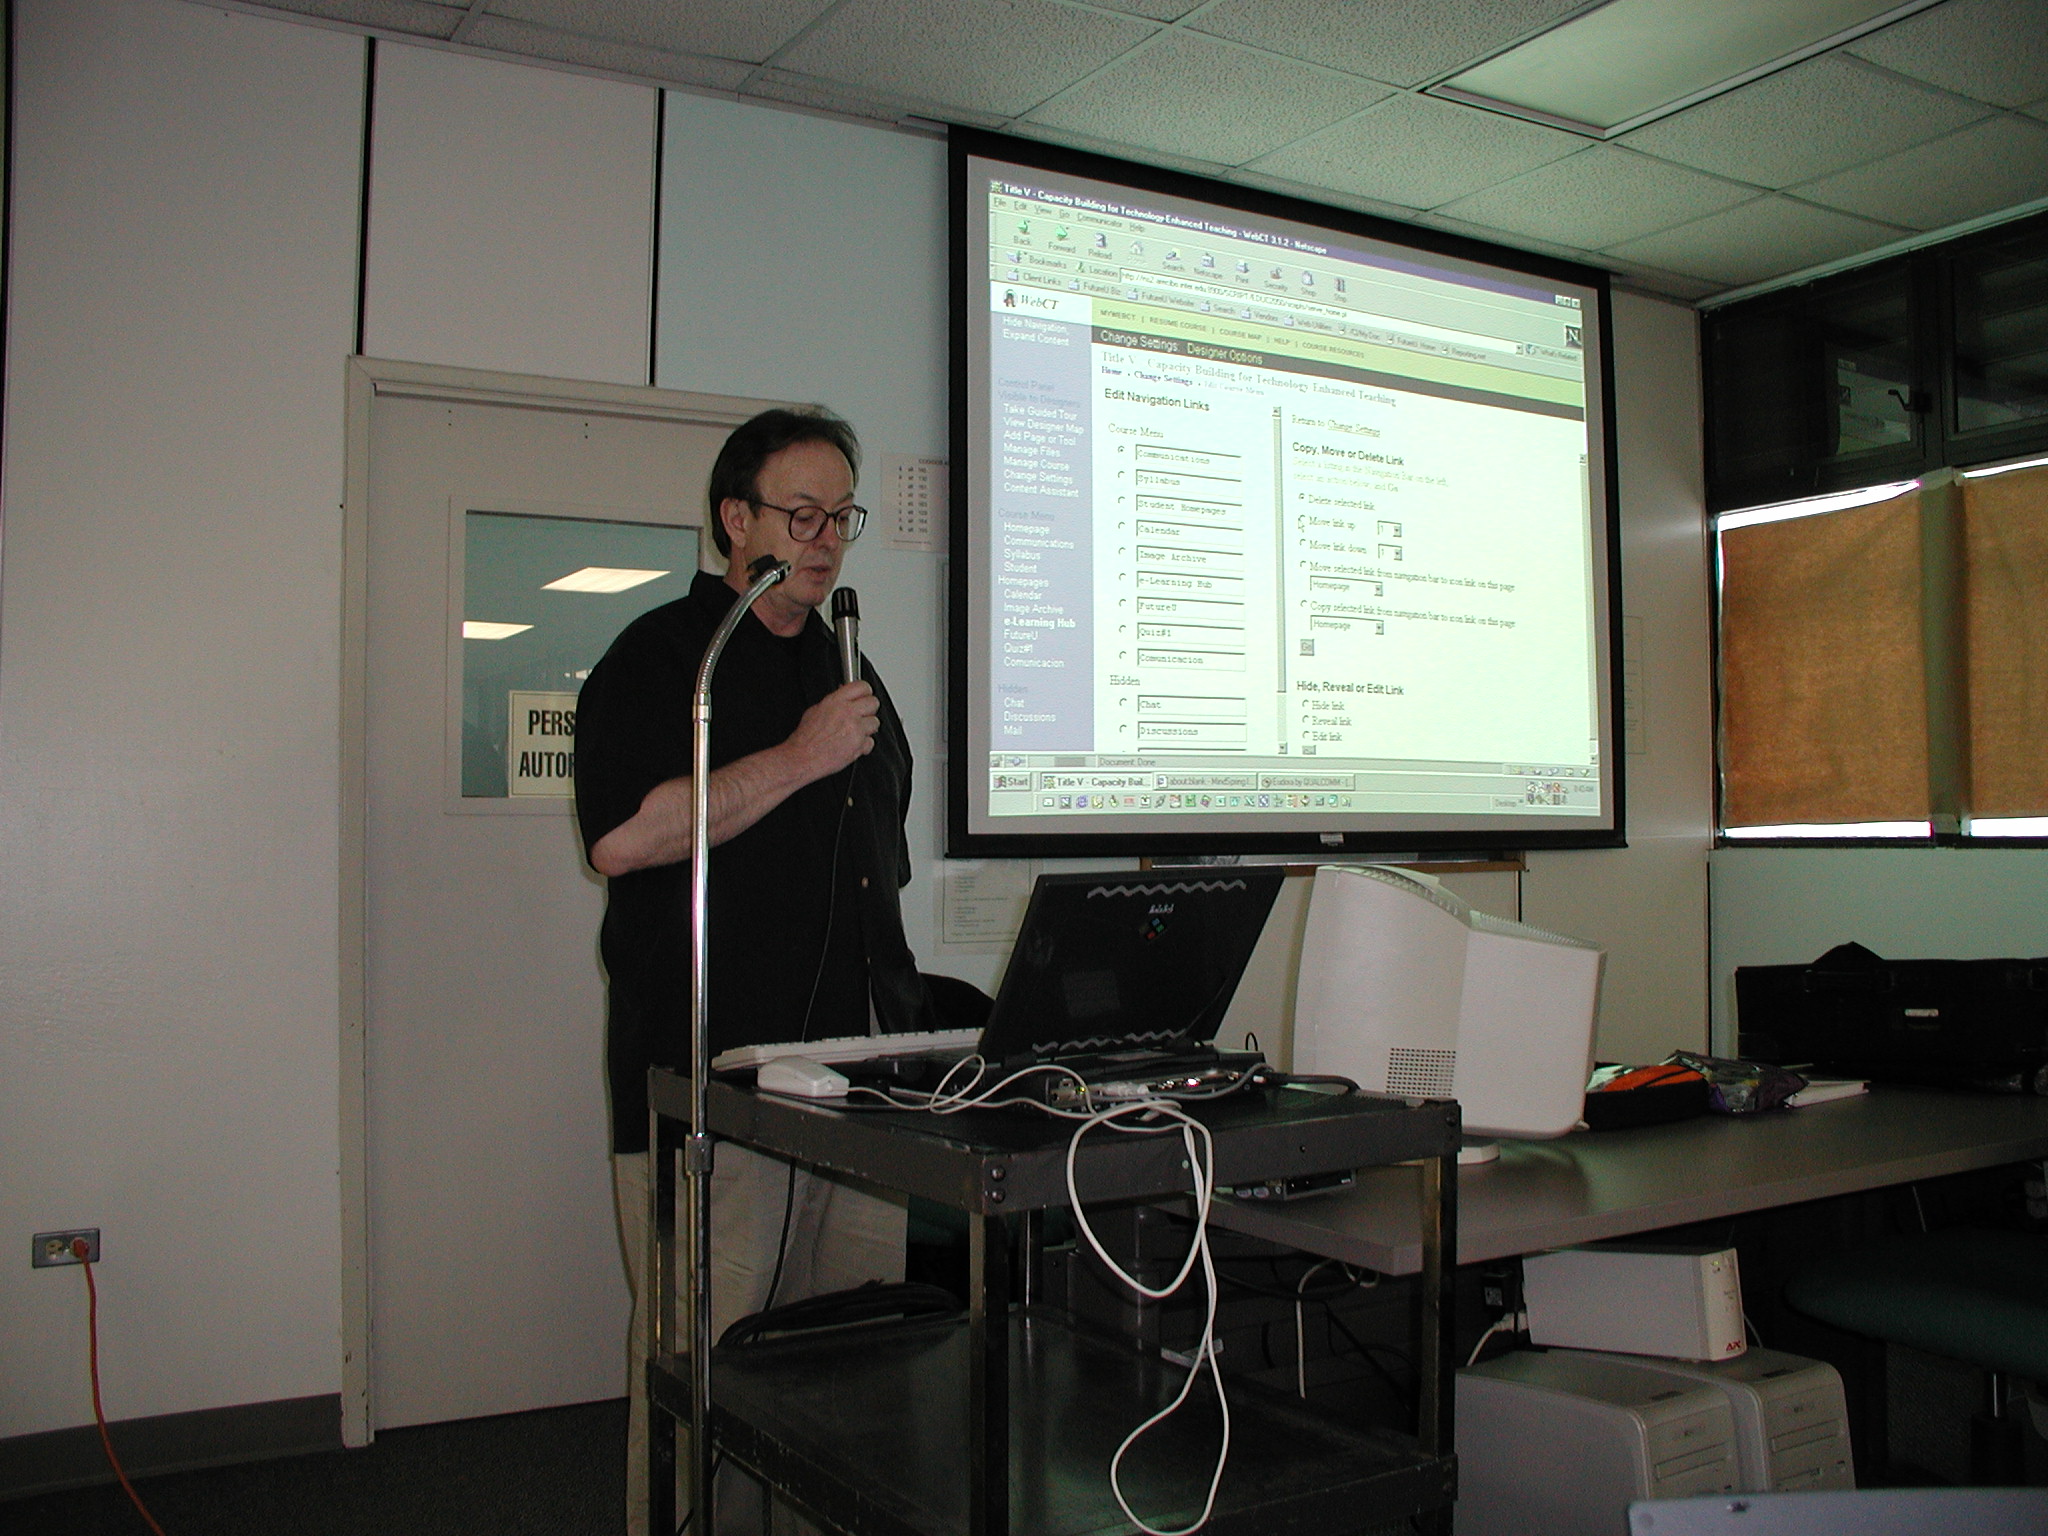 Claude teaching at UIPR